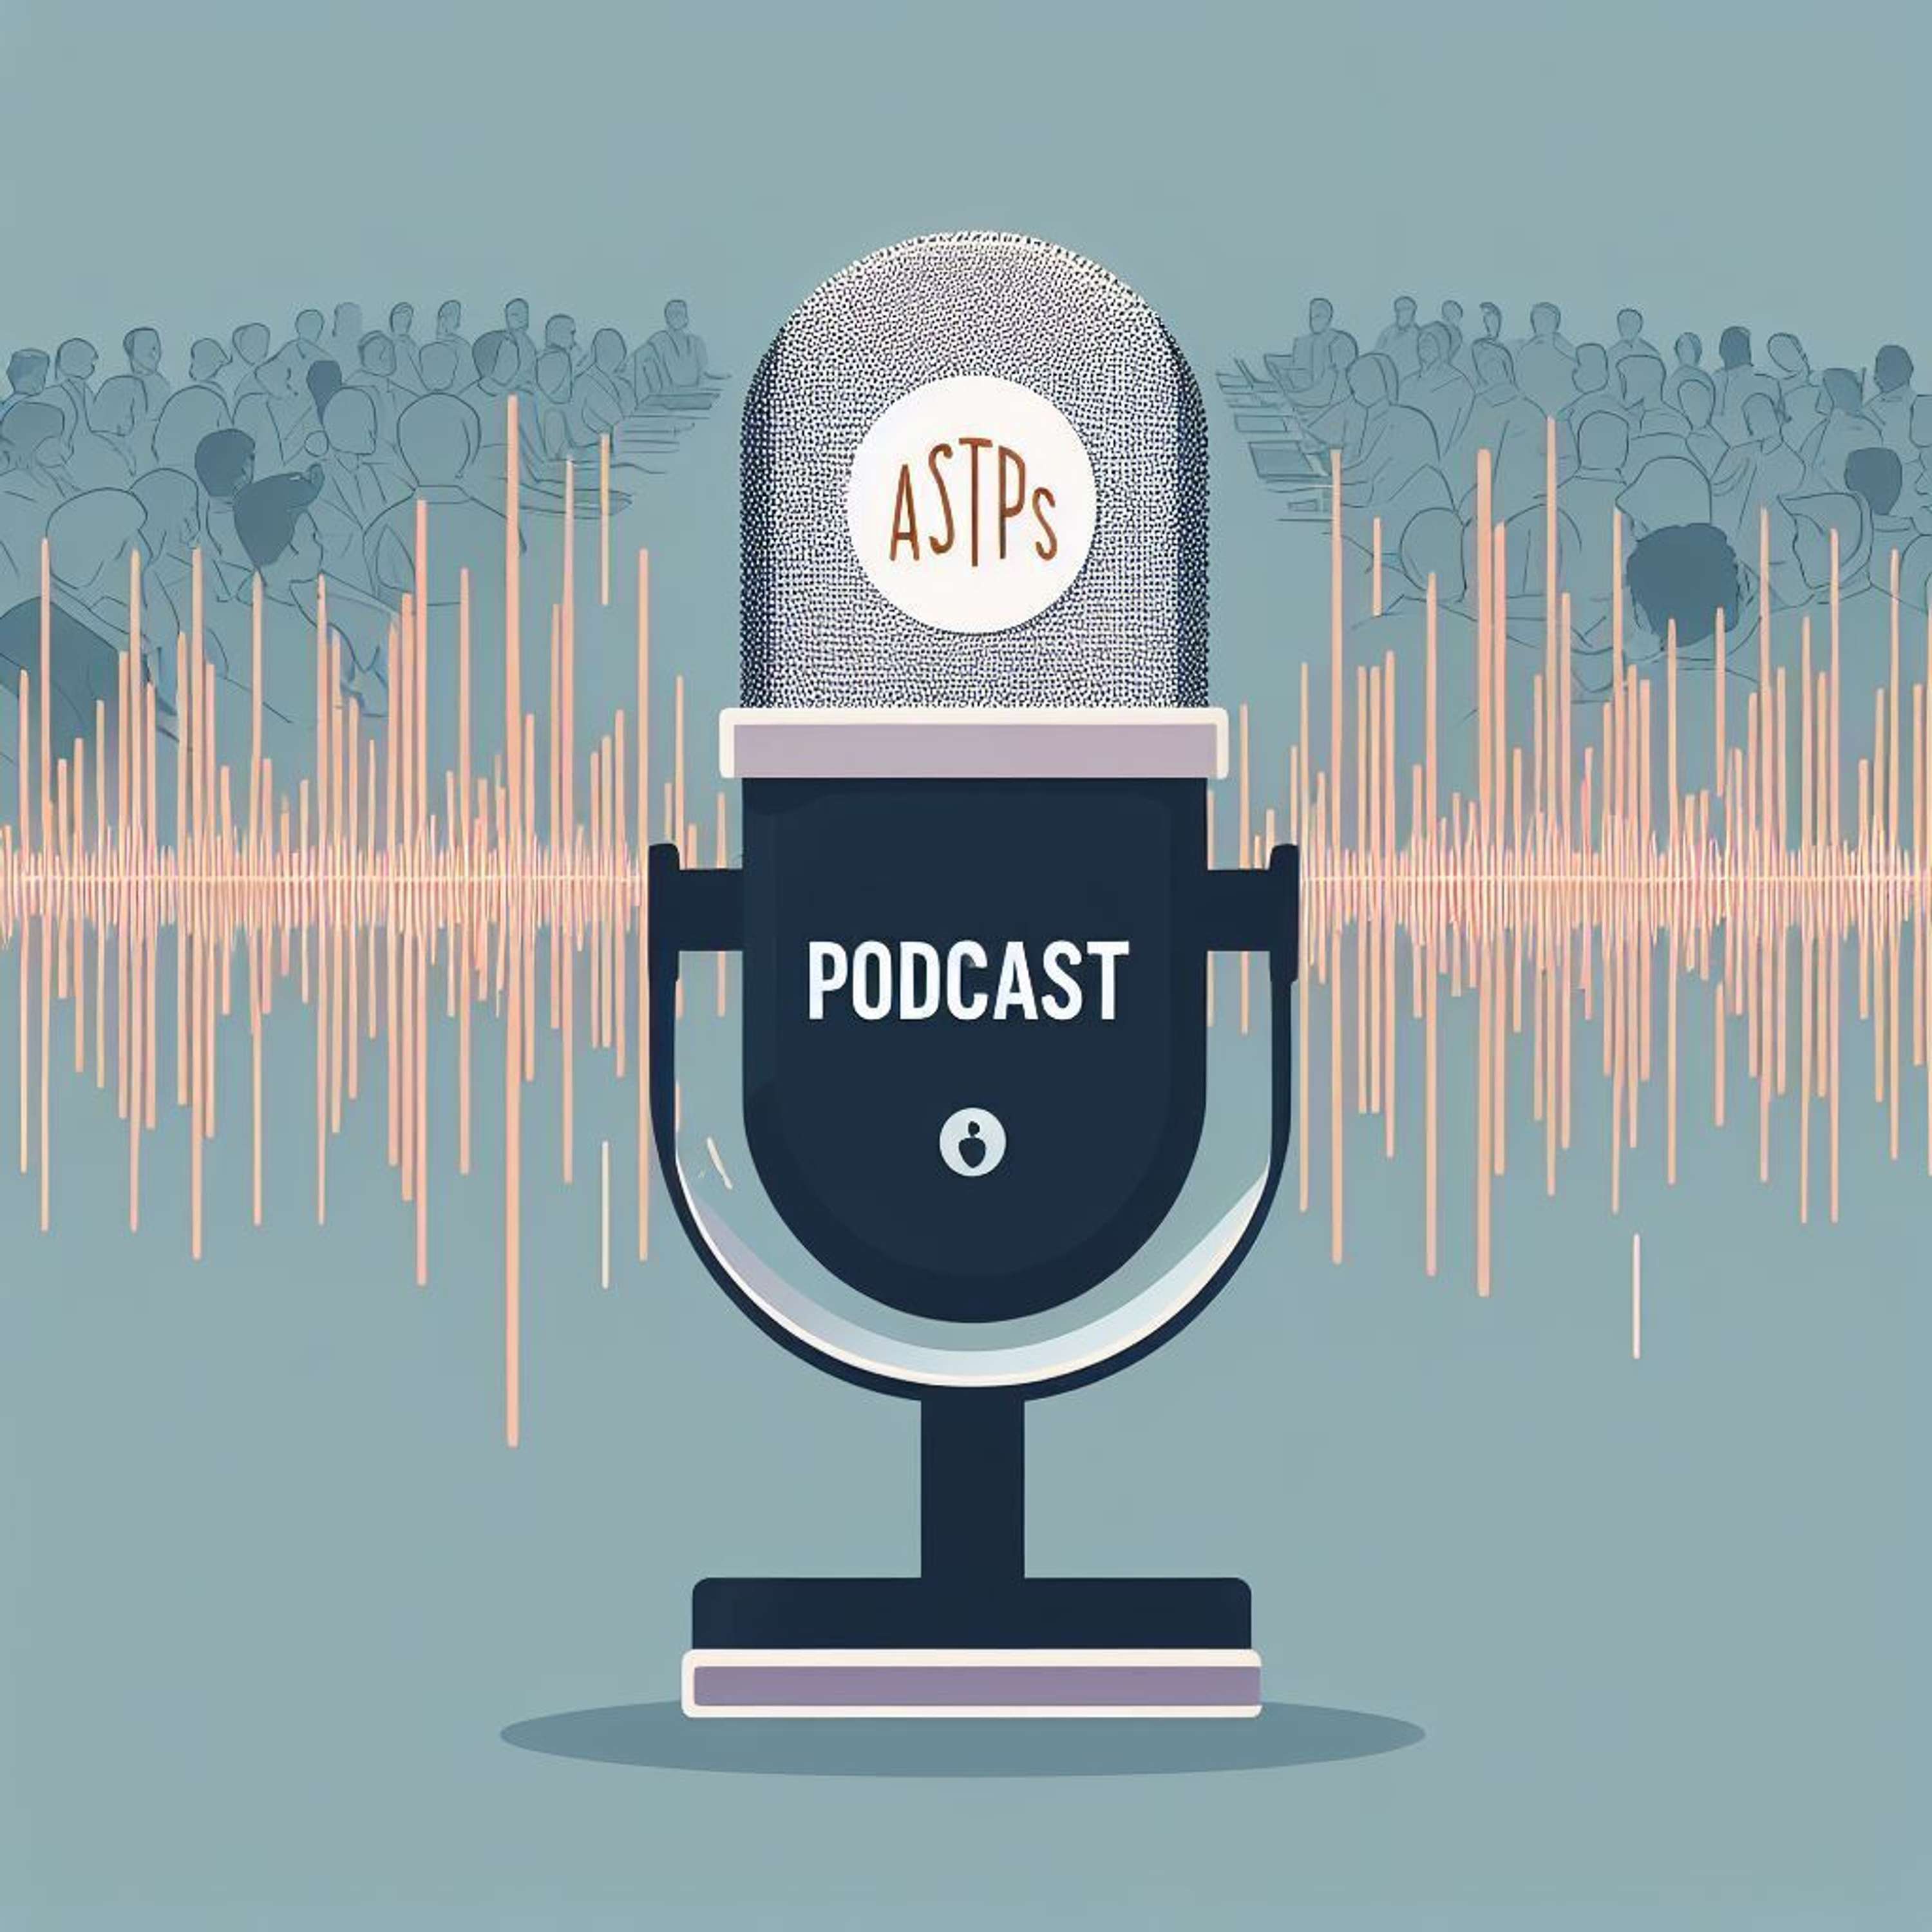 ASTPS Member's Podcast